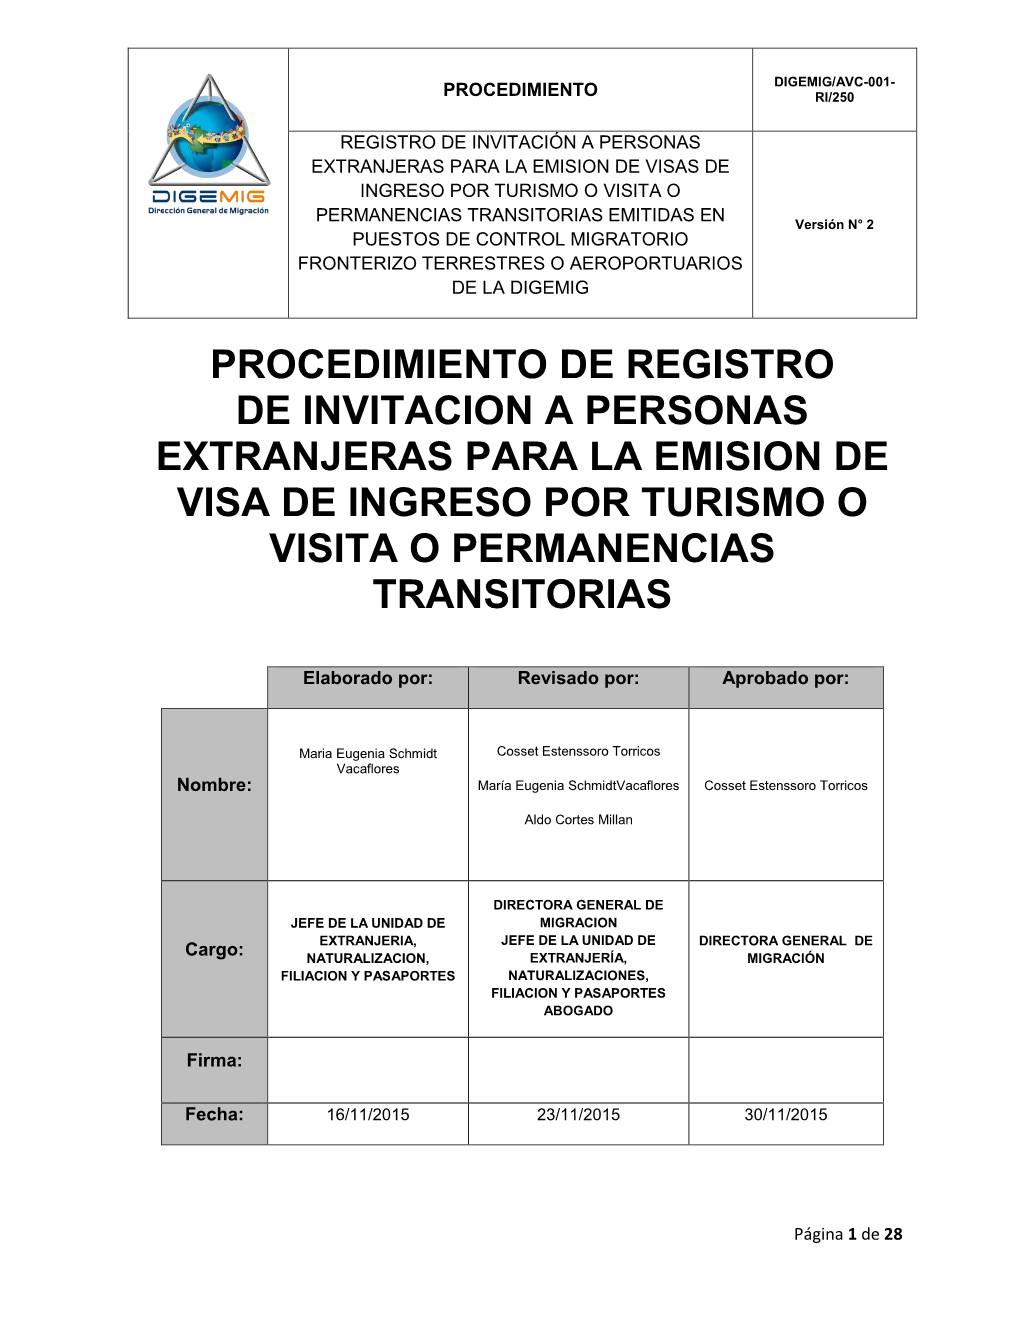 Procedimiento De Registro De Invitacion a Personas Extranjeras Para La Emision De Visa De Ingreso Por Turismo O Visita O Permanencias Transitorias